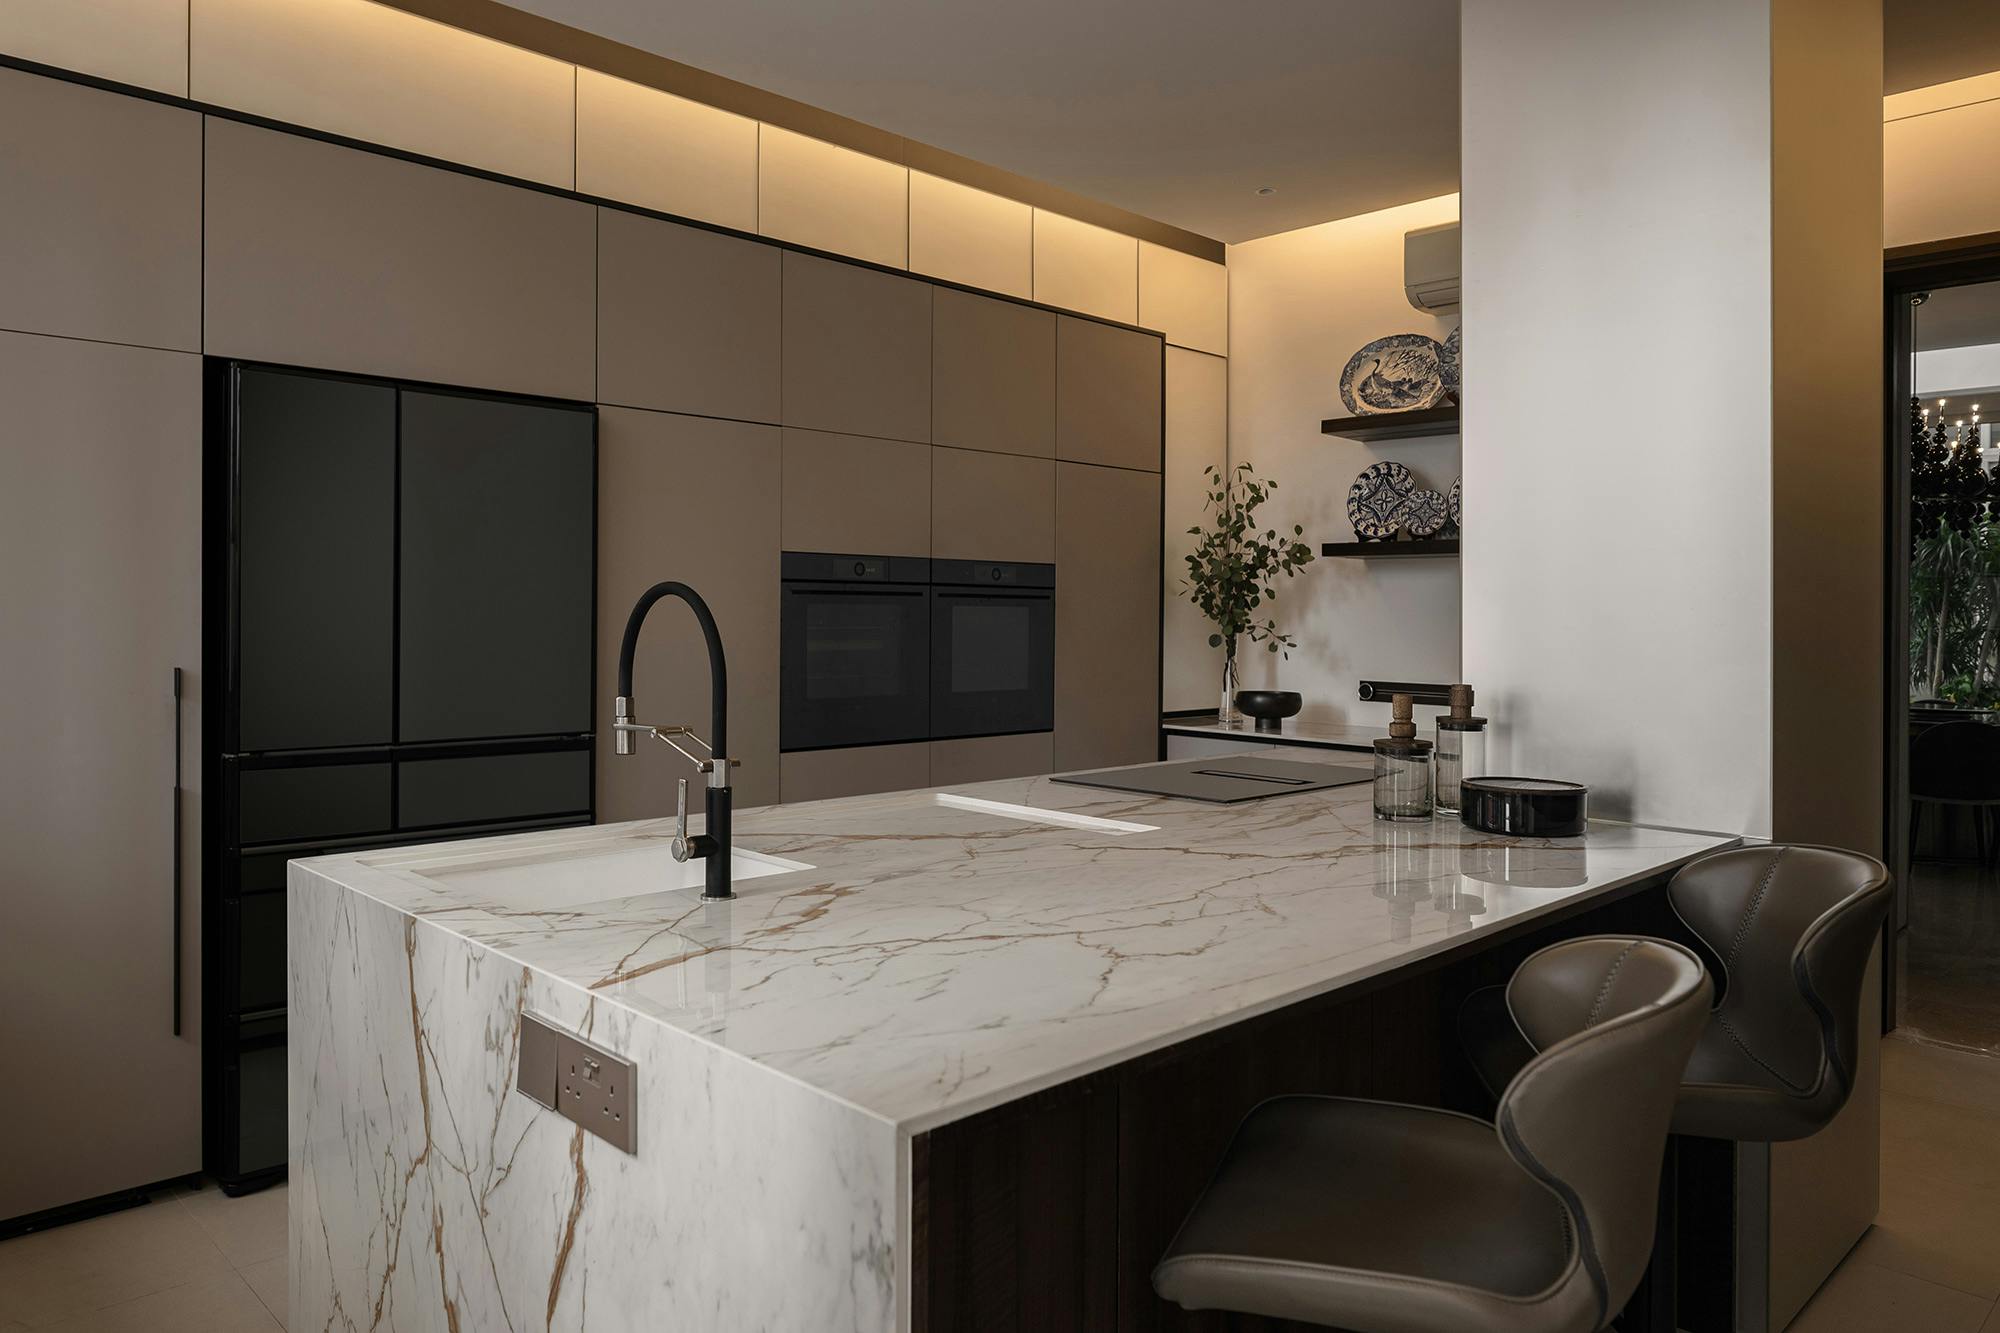 Bildnummer 37 des aktuellen Abschnitts von An open concept kitchen by MS2 Design Studio in a luxury South Beach condo von Cosentino Deutschland